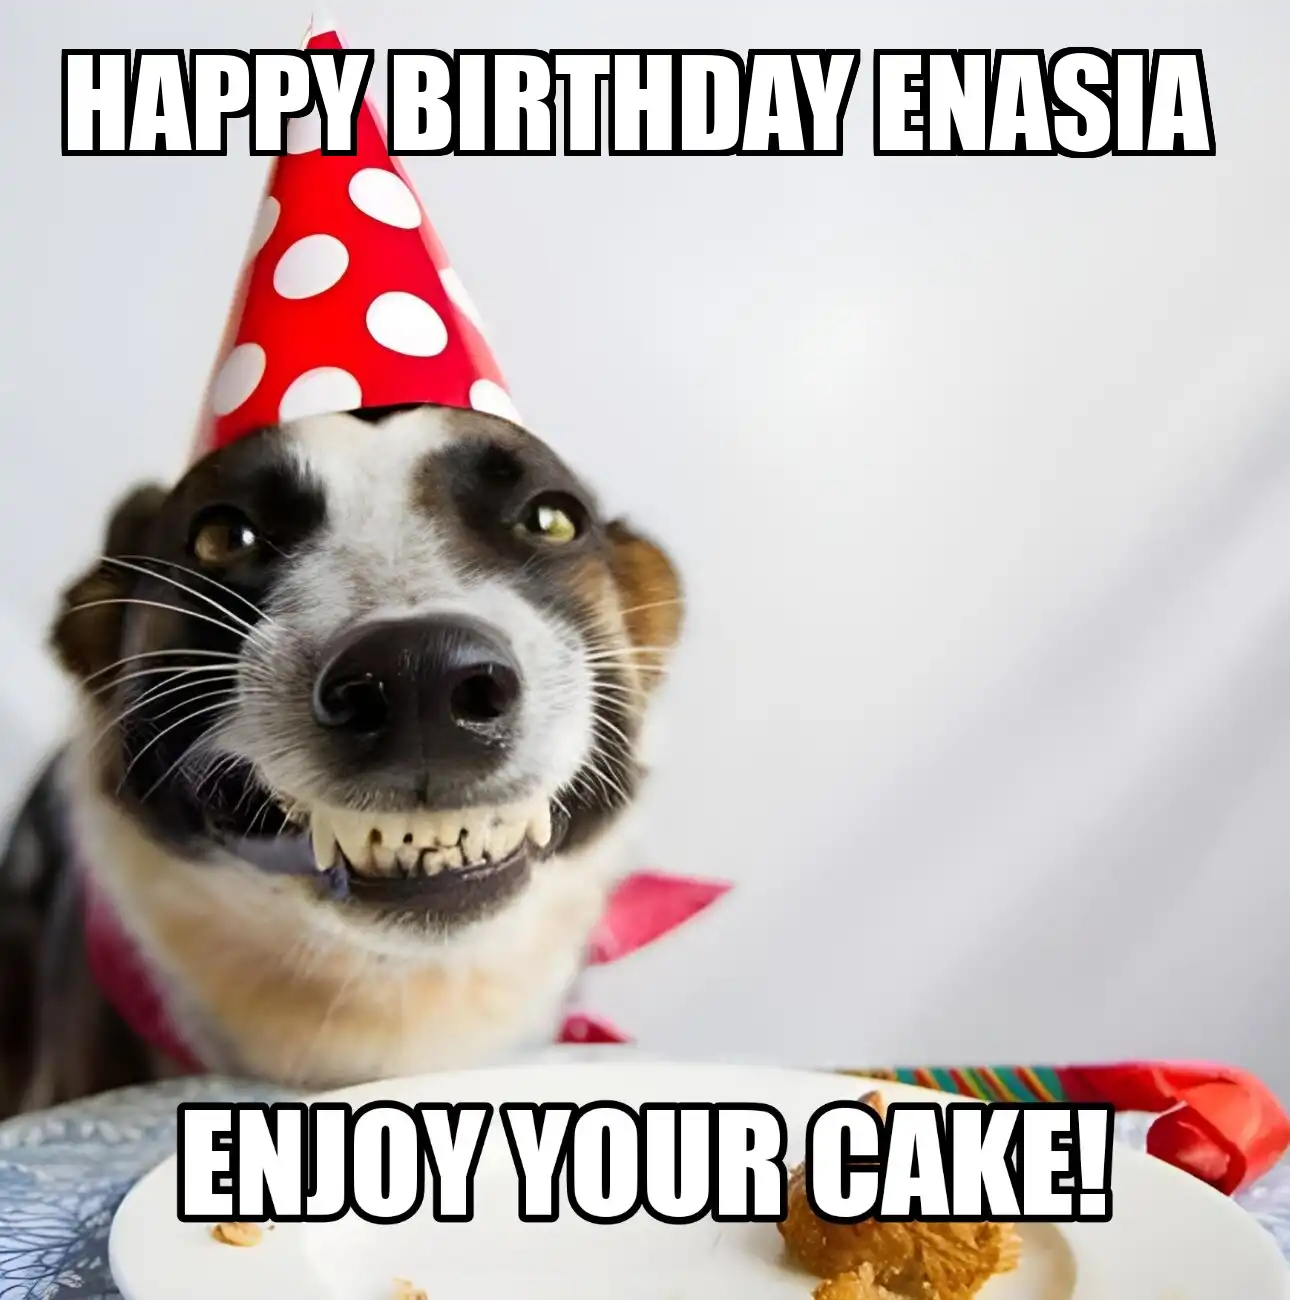 Happy Birthday Enasia Enjoy Your Cake Dog Meme